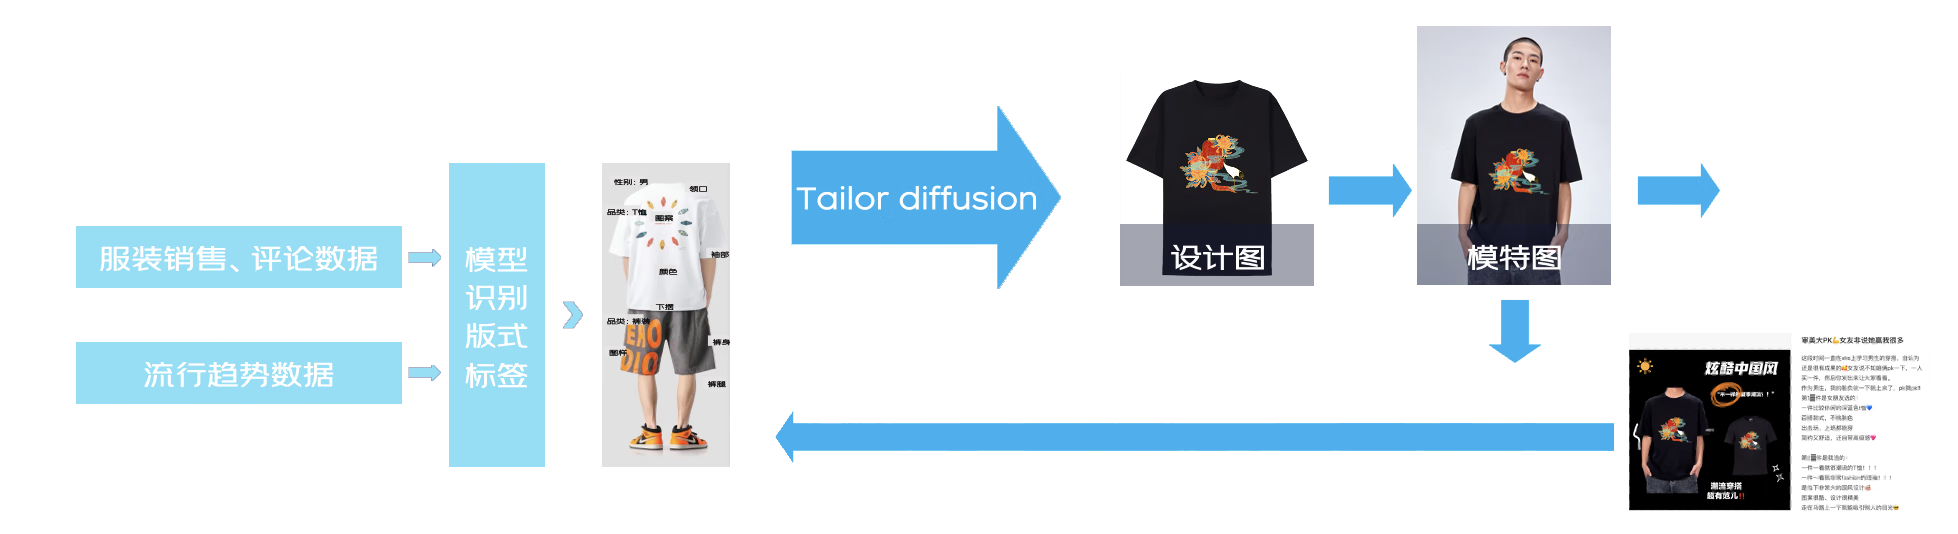 服装行业多模态算法个性化产品定制方案 | 京东云技术团队_数据